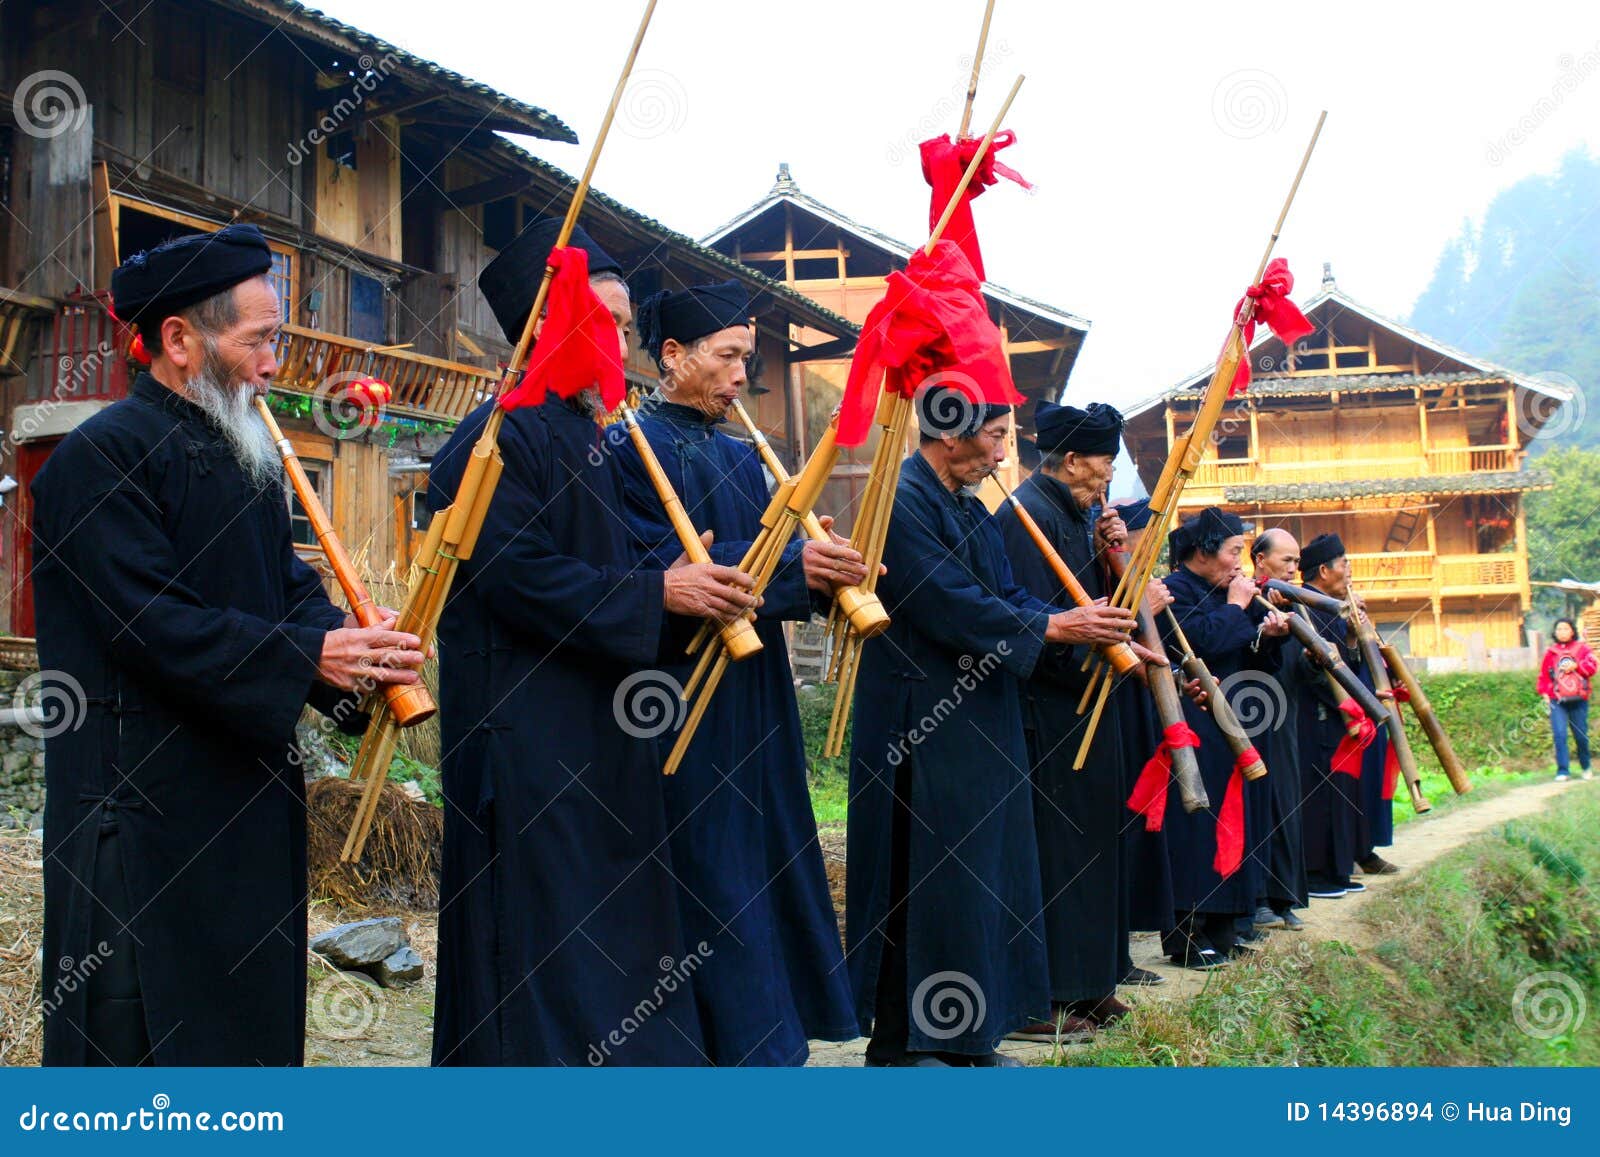 Piękne porcelanowe Guizhou oryginału wioski. 2008years aborygenów piękna podpisu porcelana przychodzi ekologicznego etnicznego szaty gości Guizhou tutaj kaililangde żywego miejscowego lokalizować lokaci spotkania miao mniejszości mniejszościowy oryginalny fotografii s strzał wycieczka turysyczna rozumie wiosek gości sposobu powitania świat